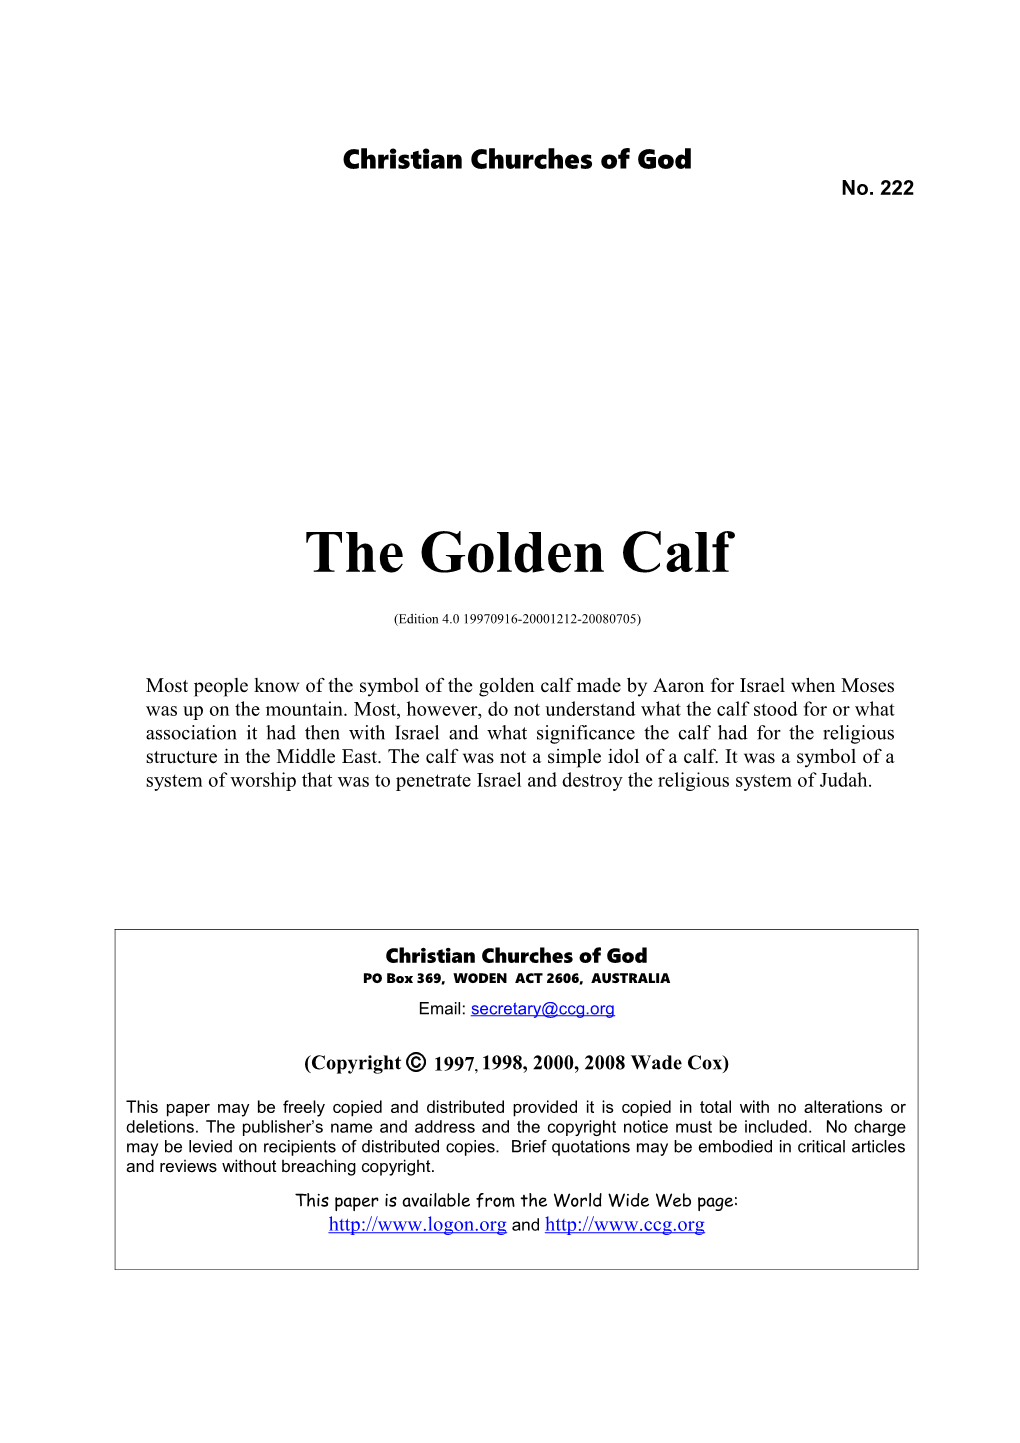 The Golden Calf (No. 222)